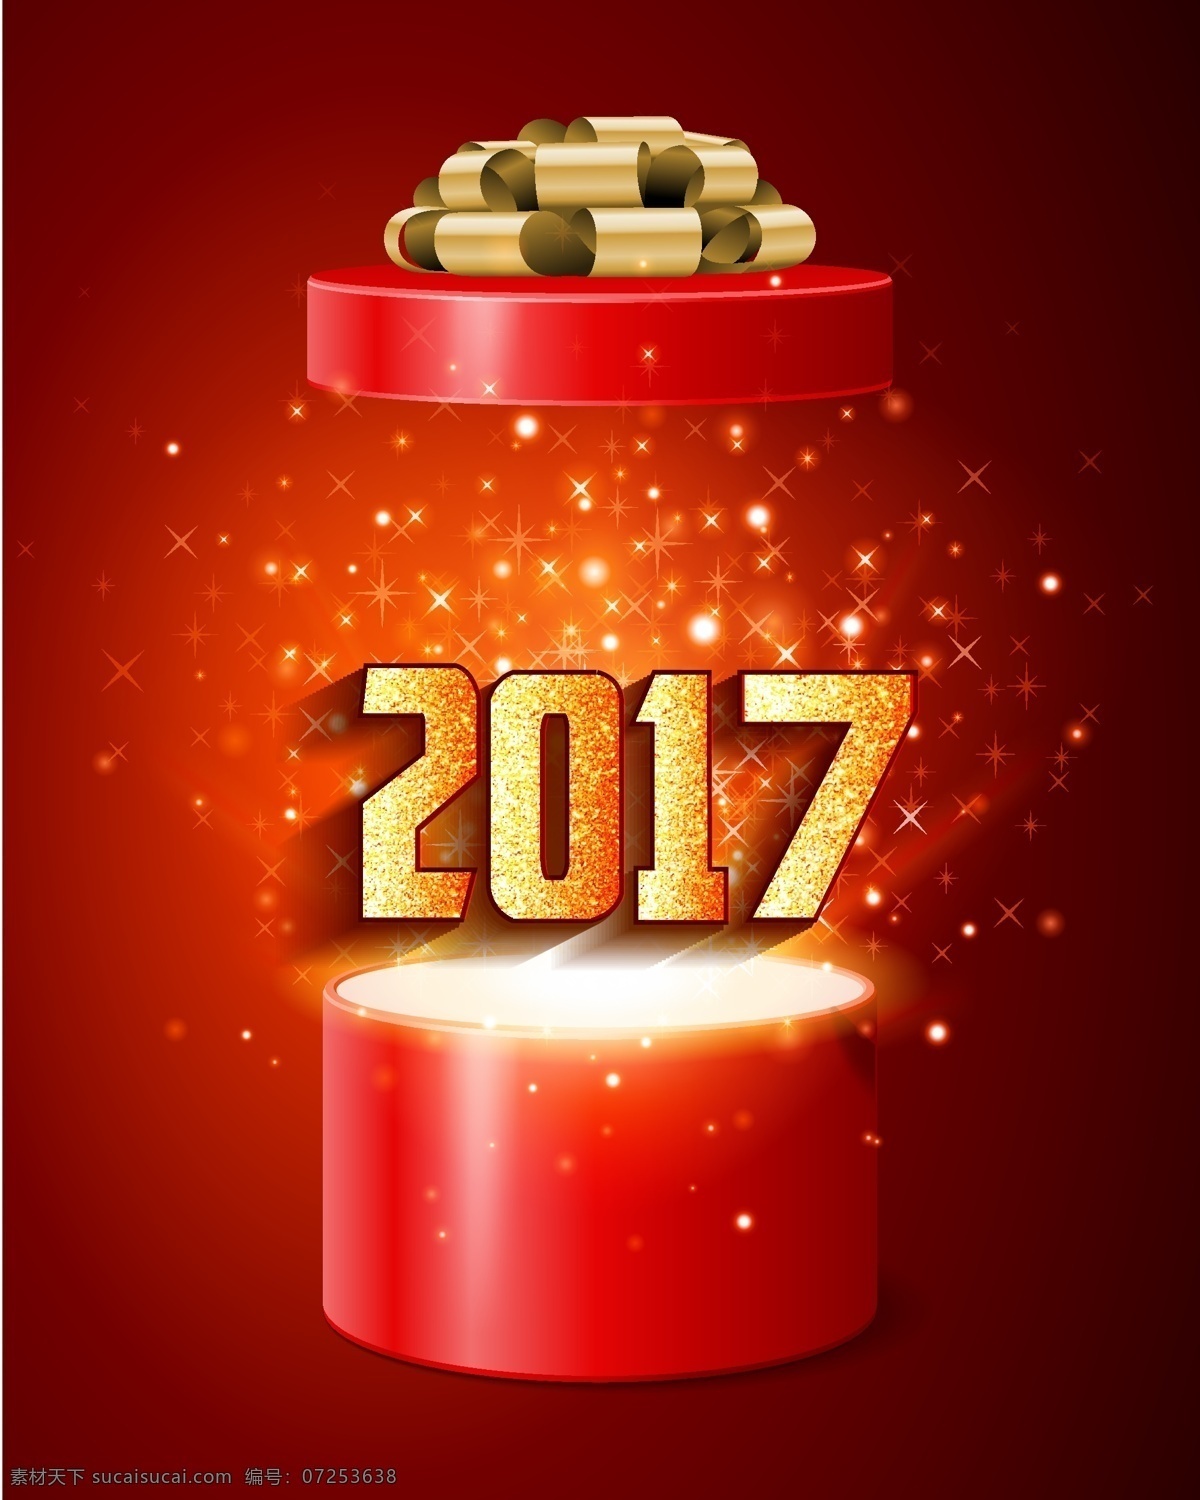 矢量 创意 礼物 盒 2017 背景 红色 礼物盒 打开 2017年 新年 炫光 星光 海报